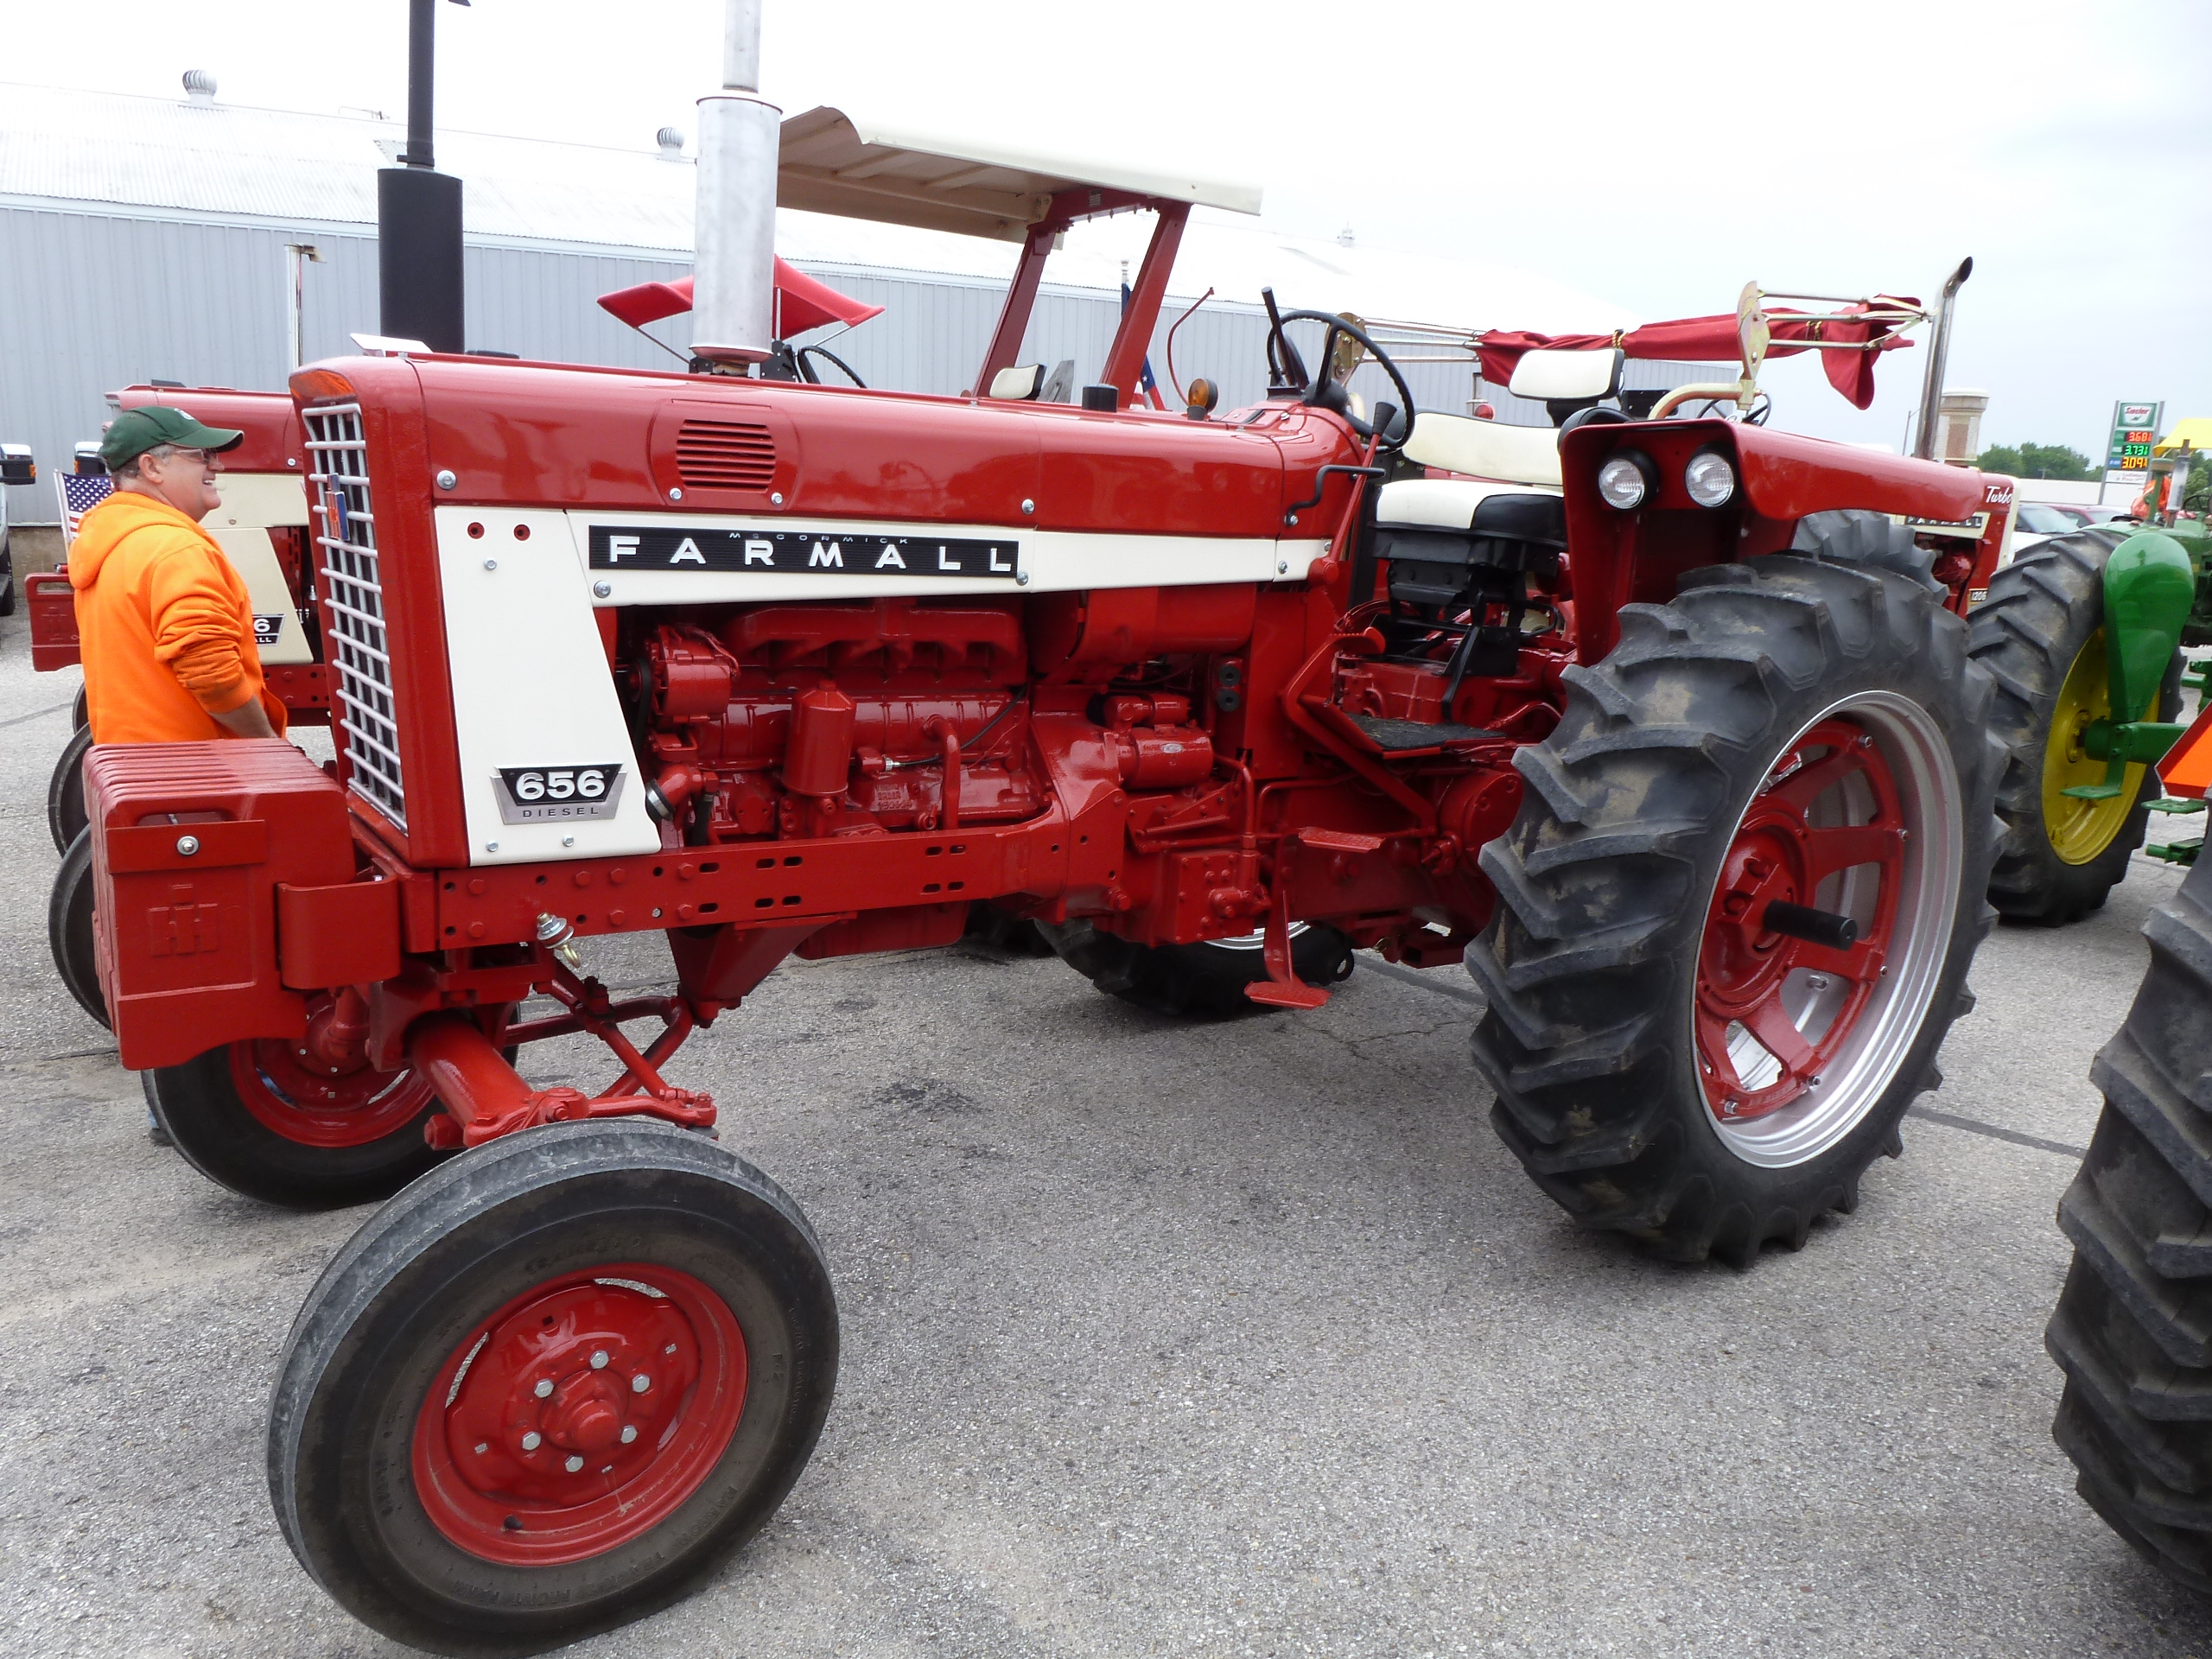 Farmall 656 | KICD Antique Tractor Ride | Pinterest